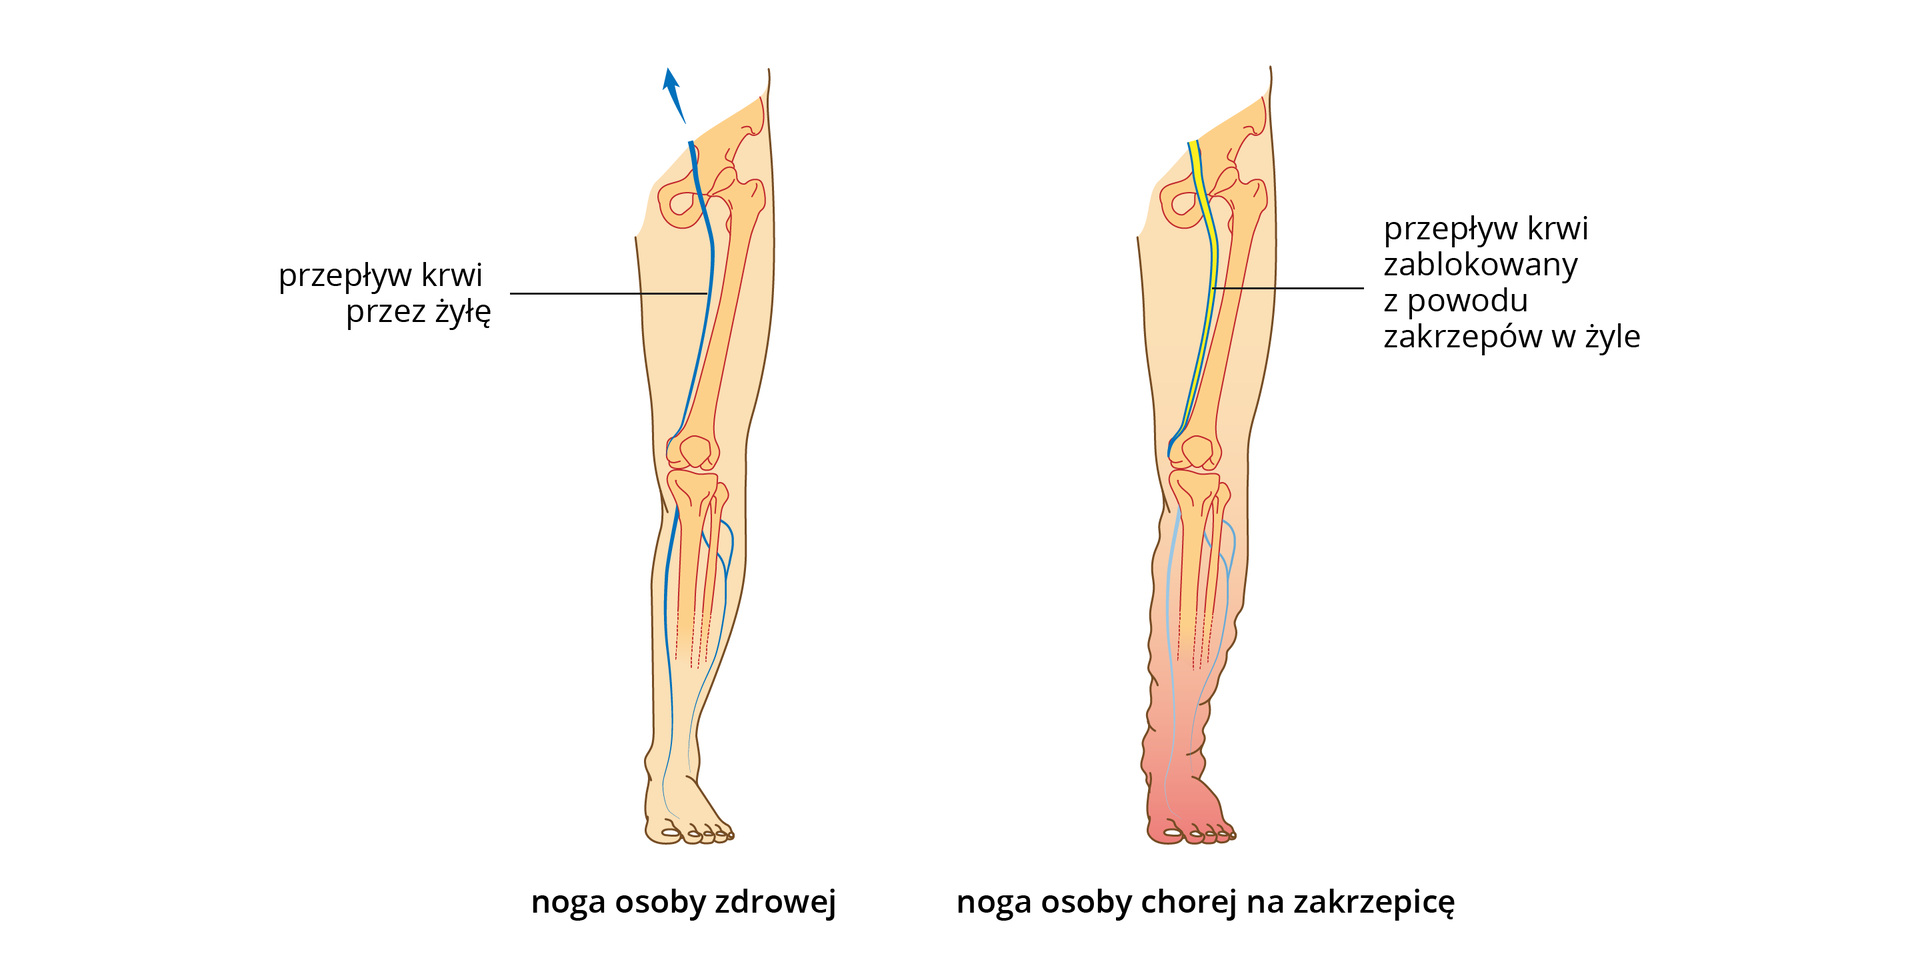 Ilustracja przedstawia różowe sylwetki nóg człowieka, z wrysowanymi kośćmi i żyłami. Noga po lewej jest zdrowa. W nodze po prawej u góry żółtym kolorem ukazano zakrzepy, blokujące żyłę. Noga na dole jest zaczerwieniona i obrzęknięta.